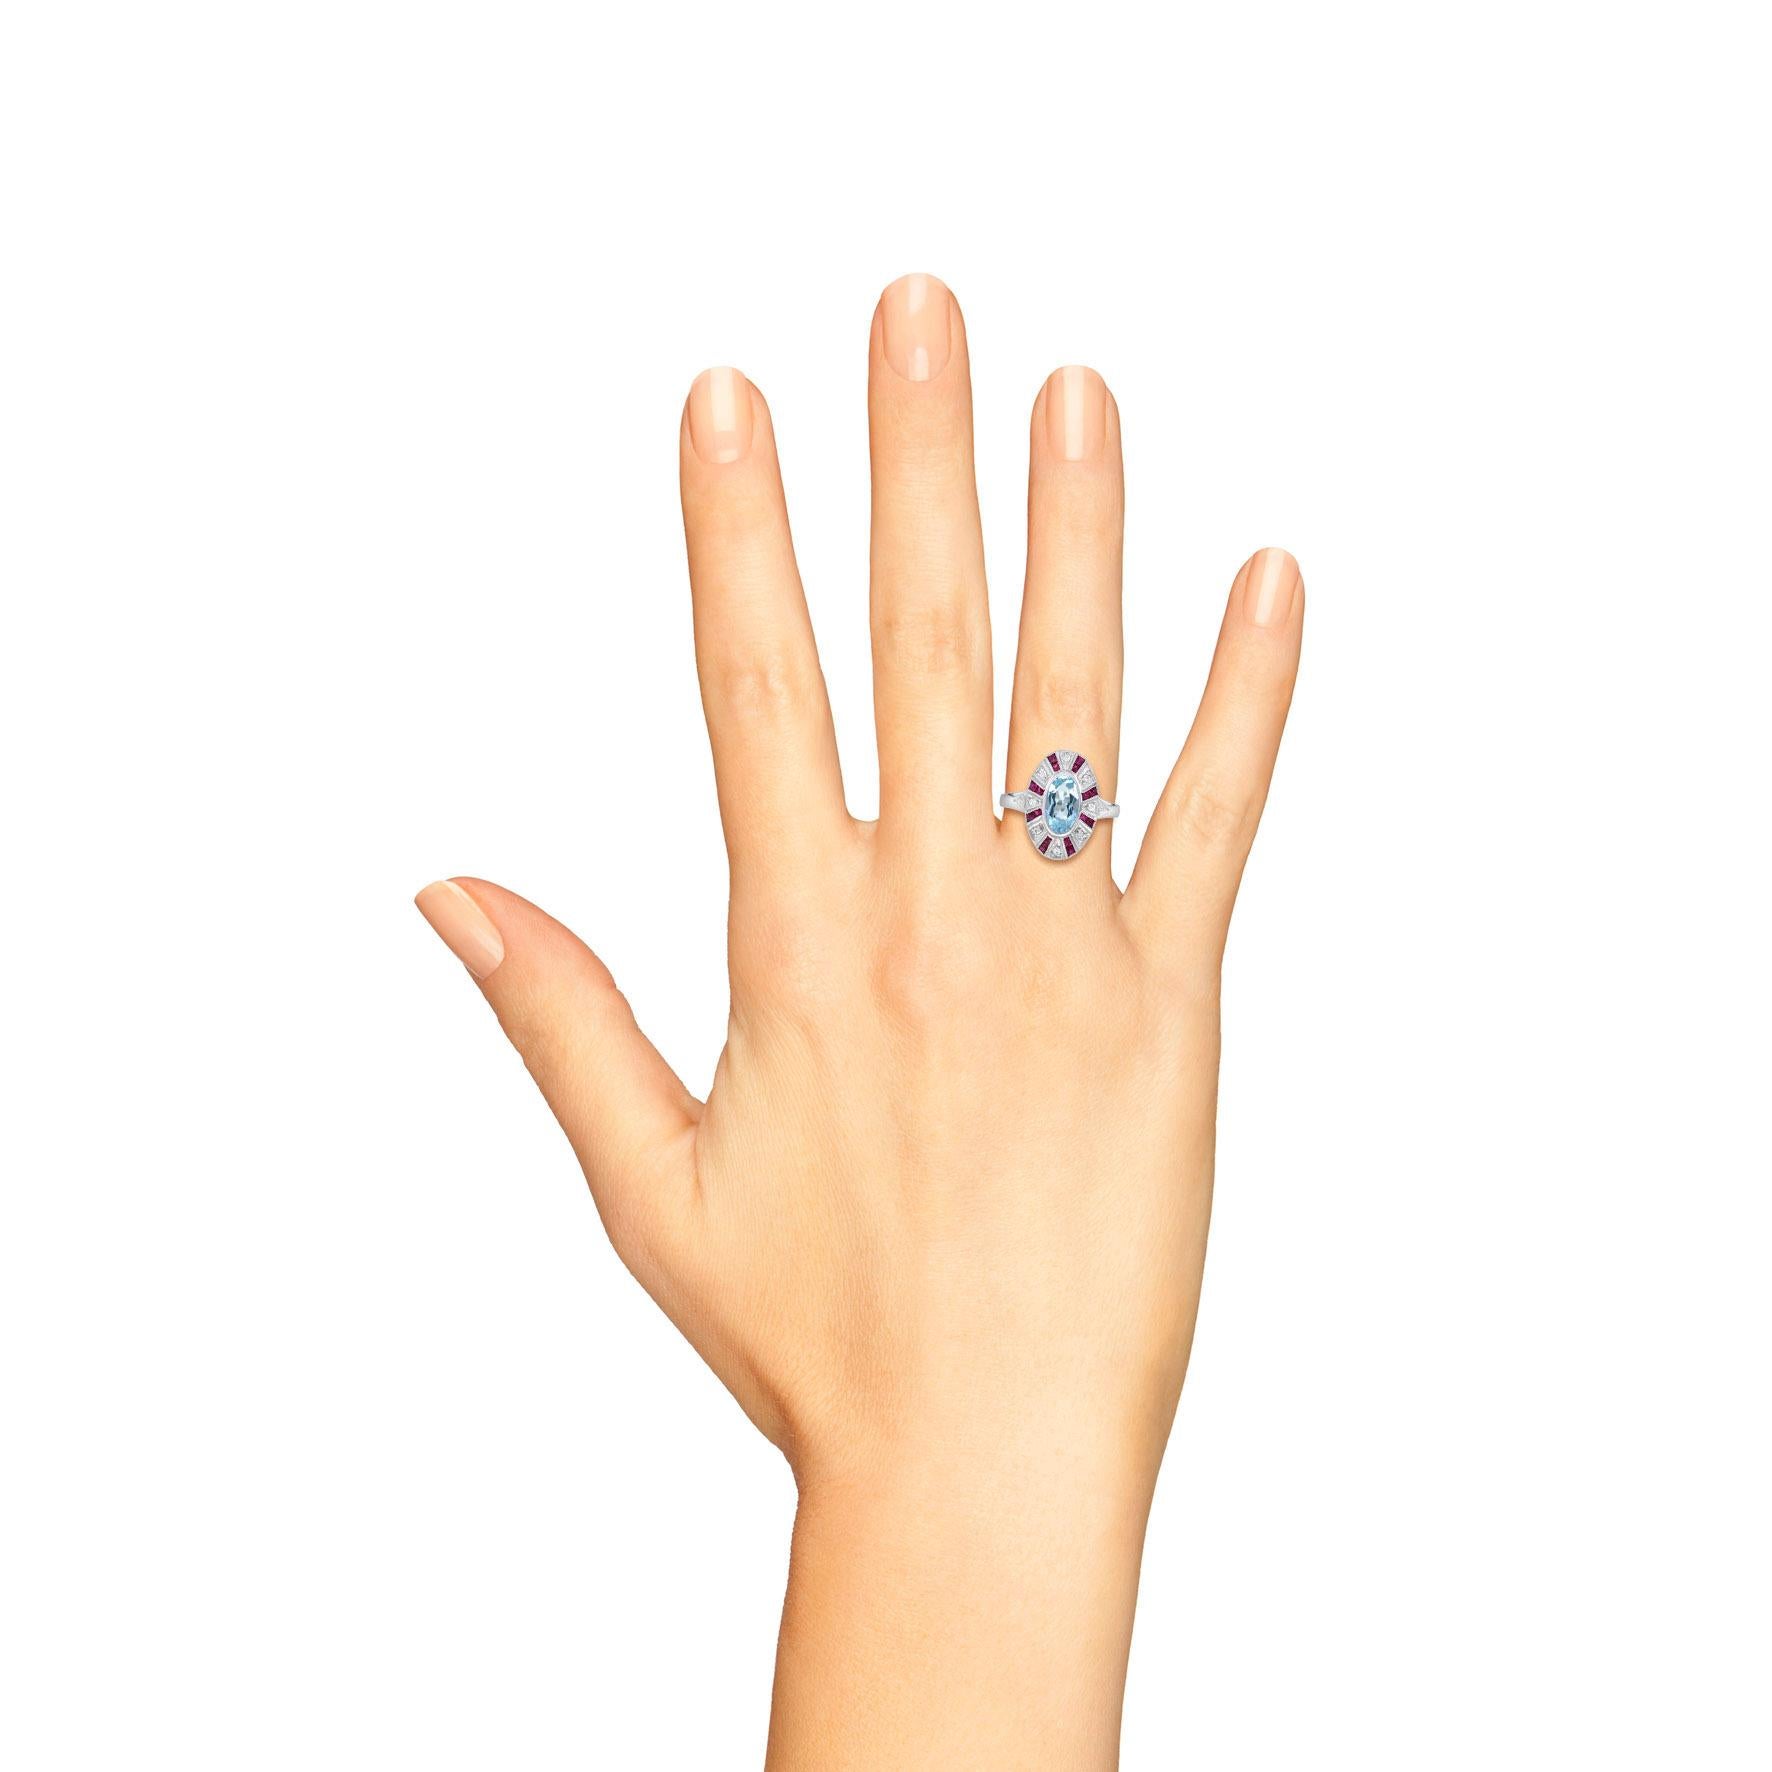 Atemberaubende Vintage inspiriert 18k Weißgold blauen Topas mit Rubin und Diamant gesetzt Ring. Der Ring besteht aus einem zentralen ovalen Blautopas, umgeben von Rubinen im französischen Schliff und Diamanten im Rundschliff. Ein Highlight für